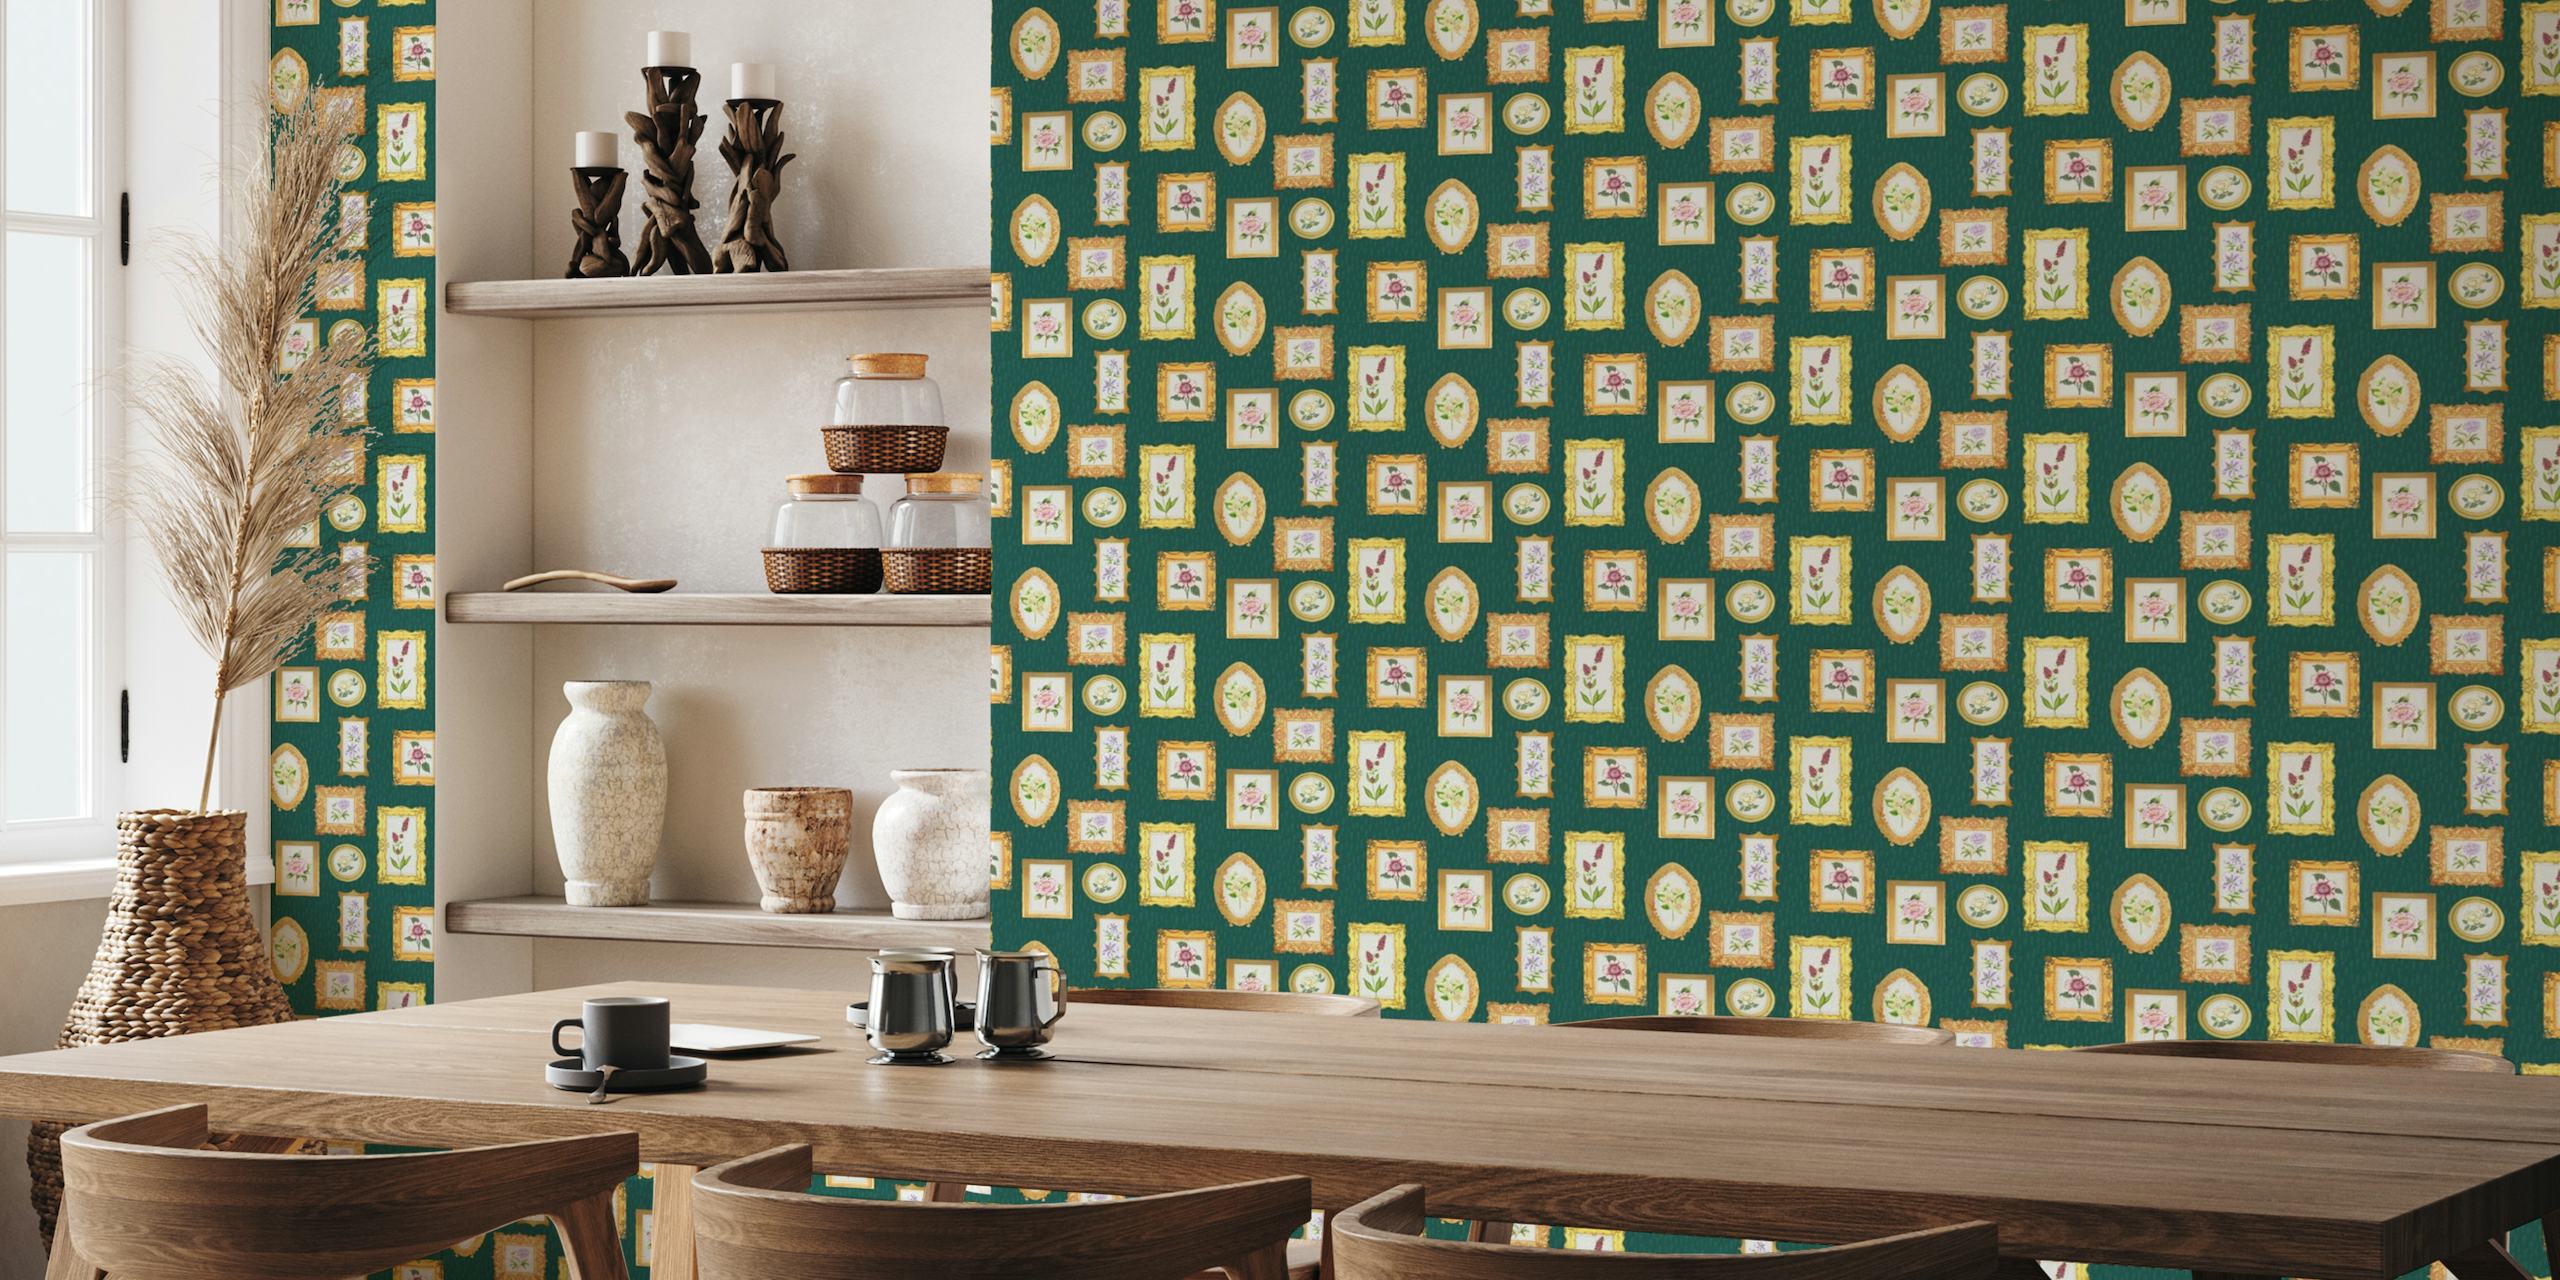 Elegant vintage frame and flower patterned wallpaper on a green background